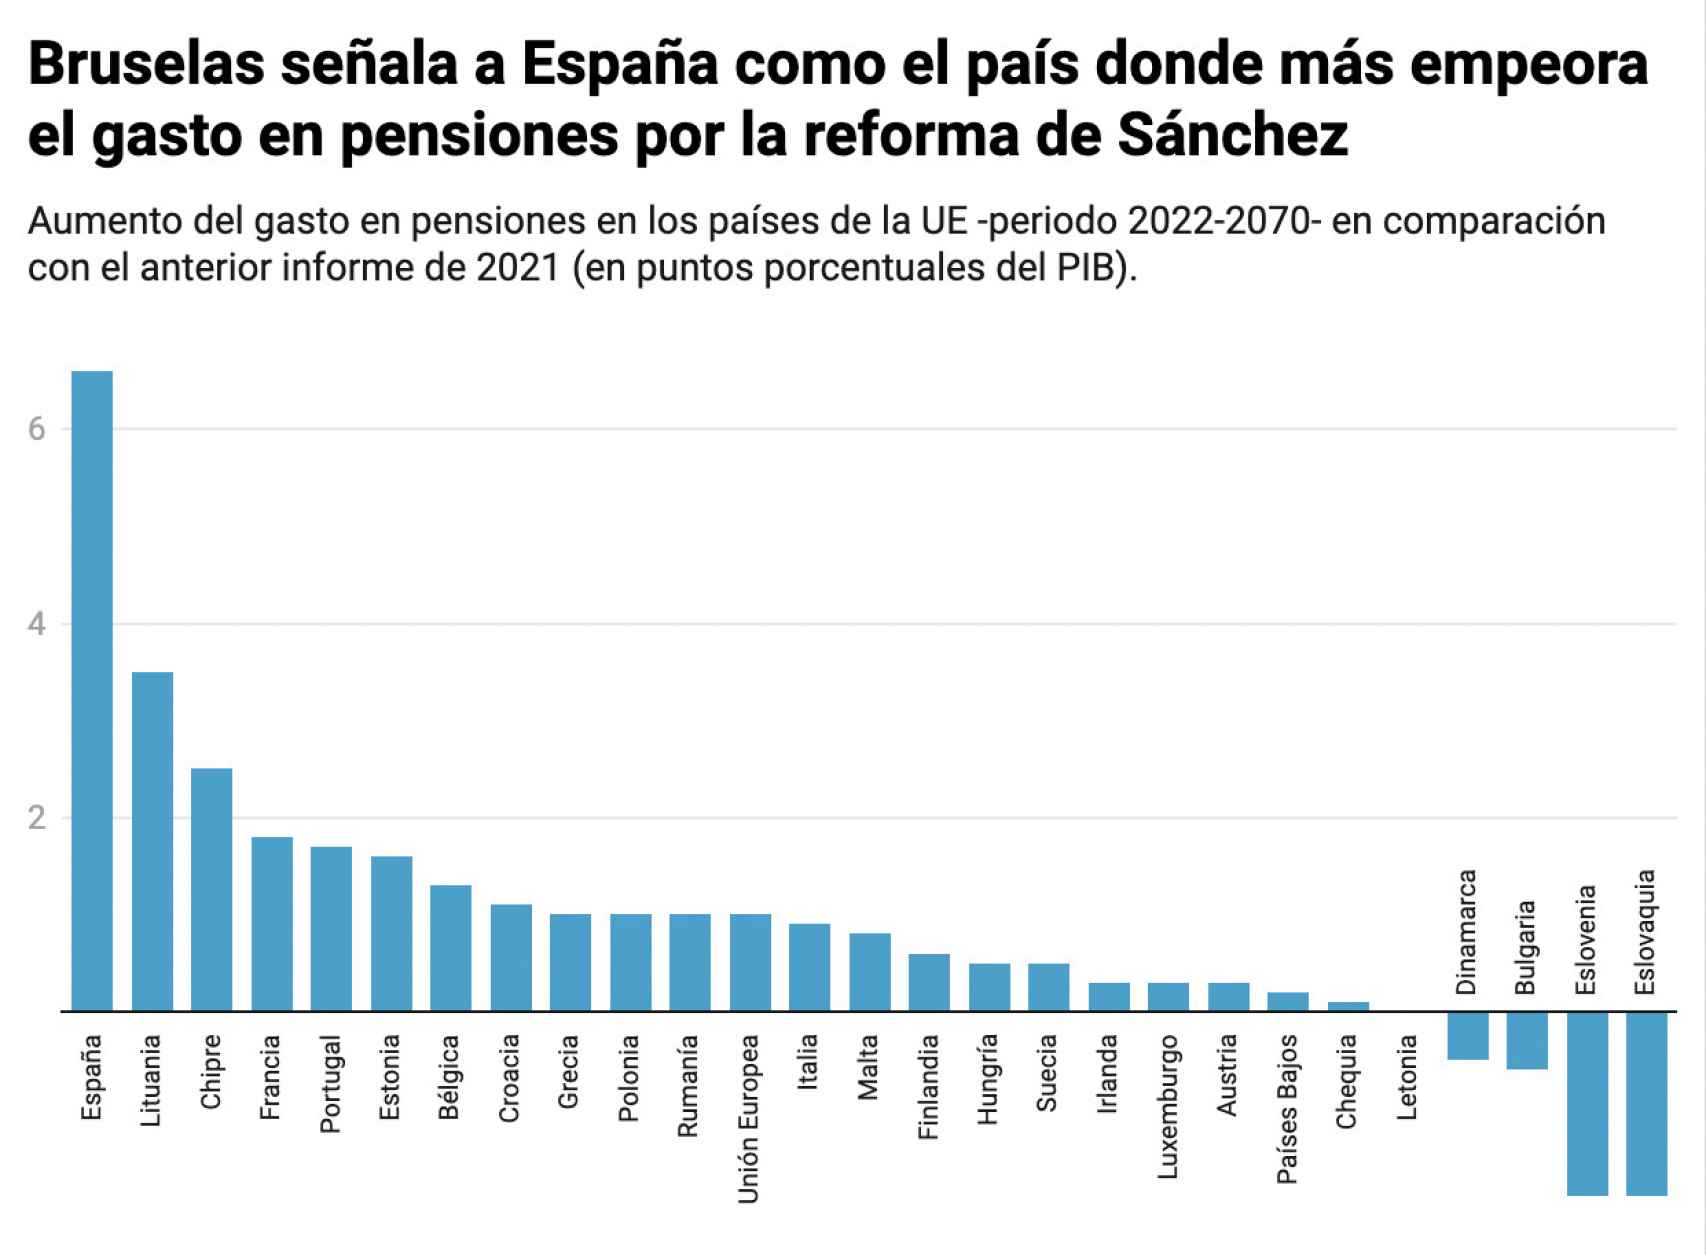 Aumento del gasto en pensiones en los países de la UE